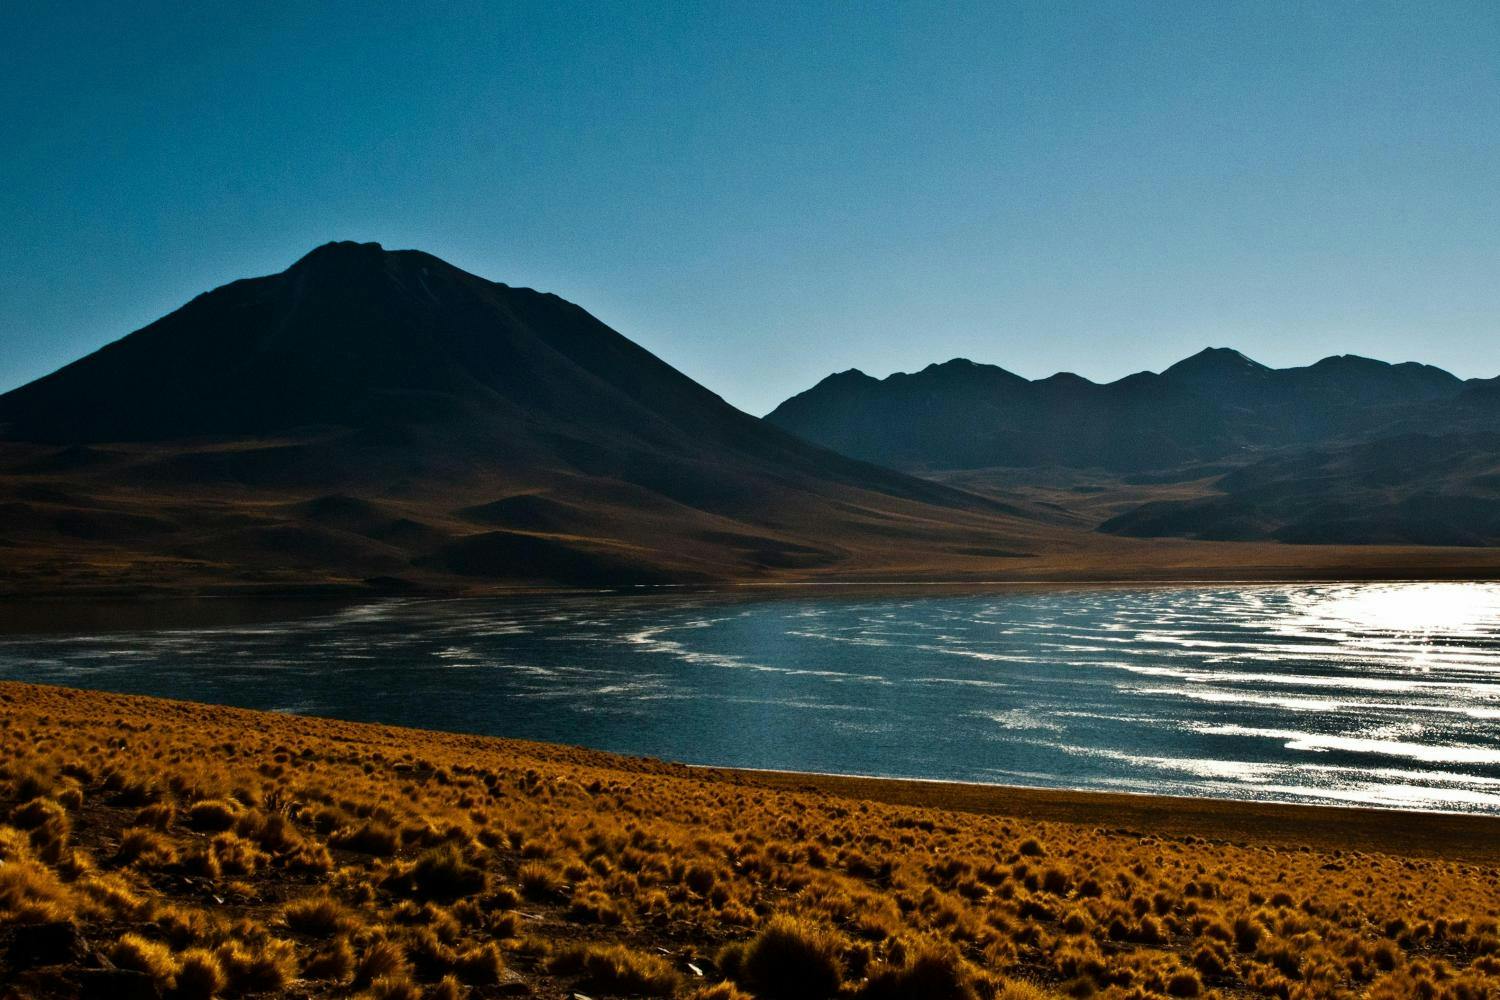 Excursão de dia inteiro às lagoas altiplânicas e ao Salar do Atacama com almoço